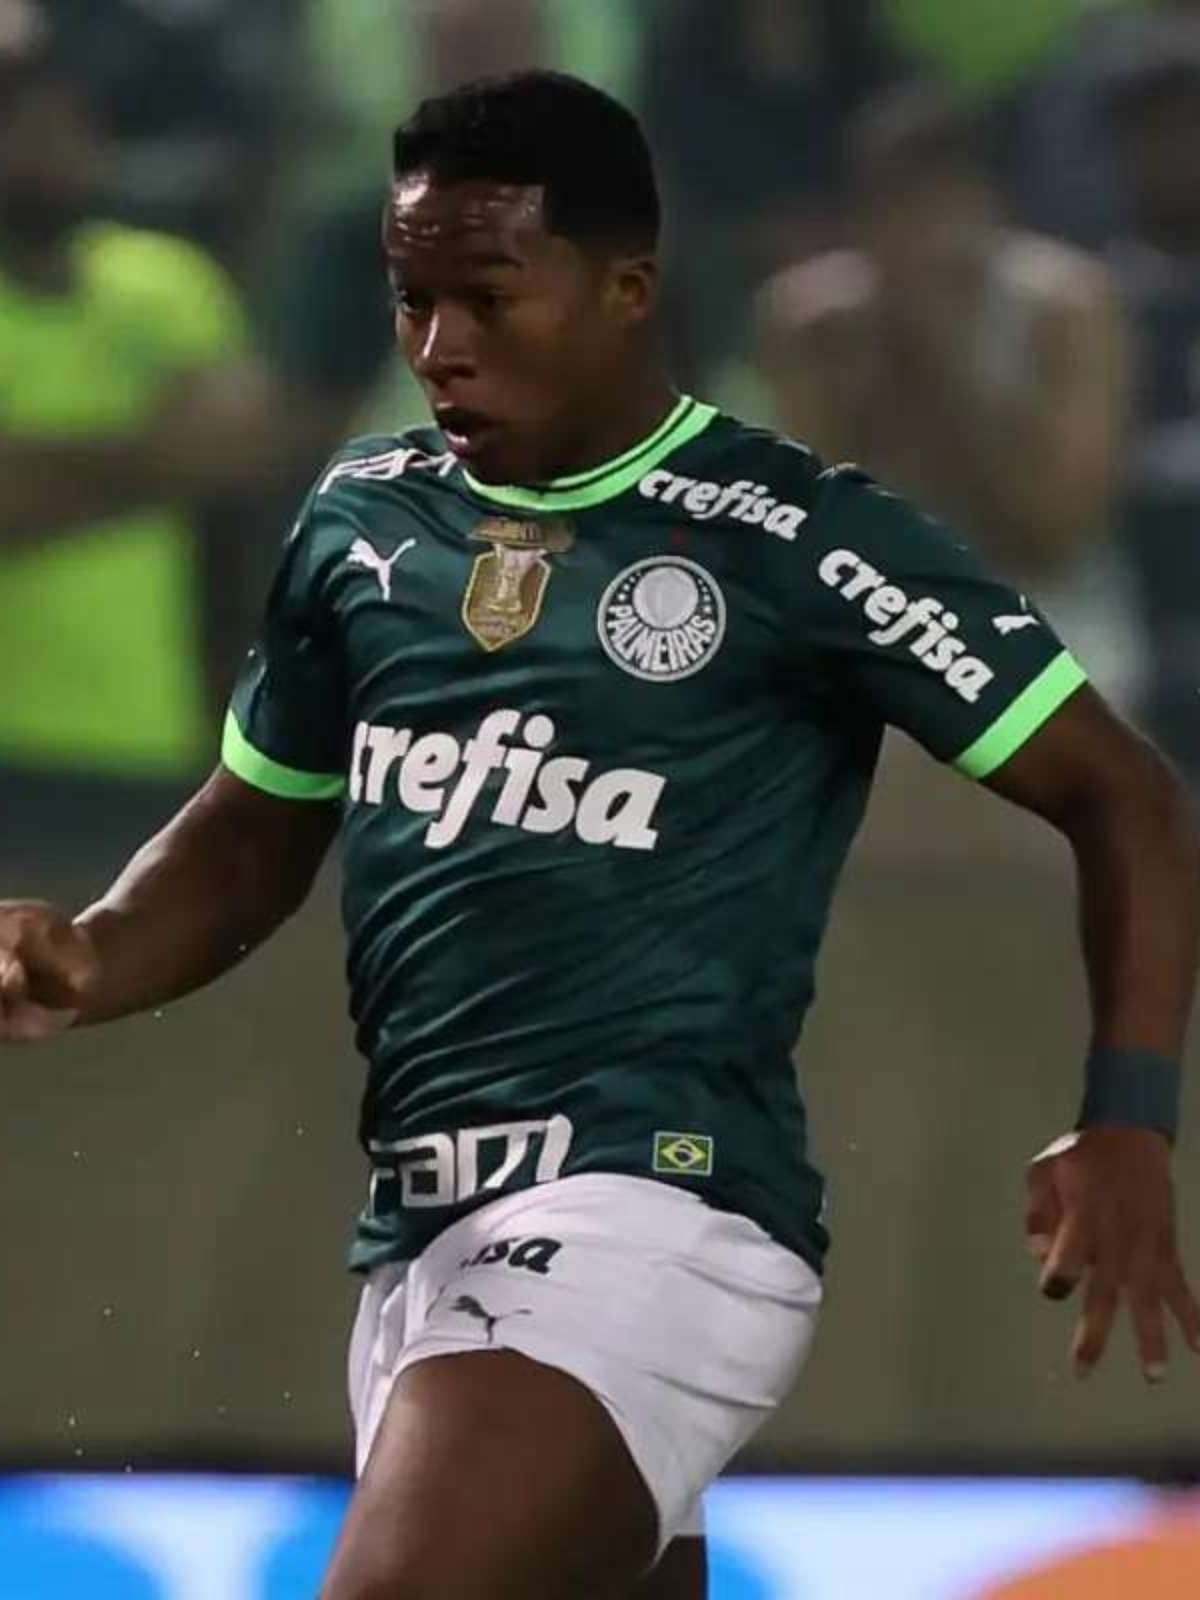 Artilheiro, garçom, quem mais jogou… Confira um balanço do elenco do  Palmeiras em 2023 - ISTOÉ Independente